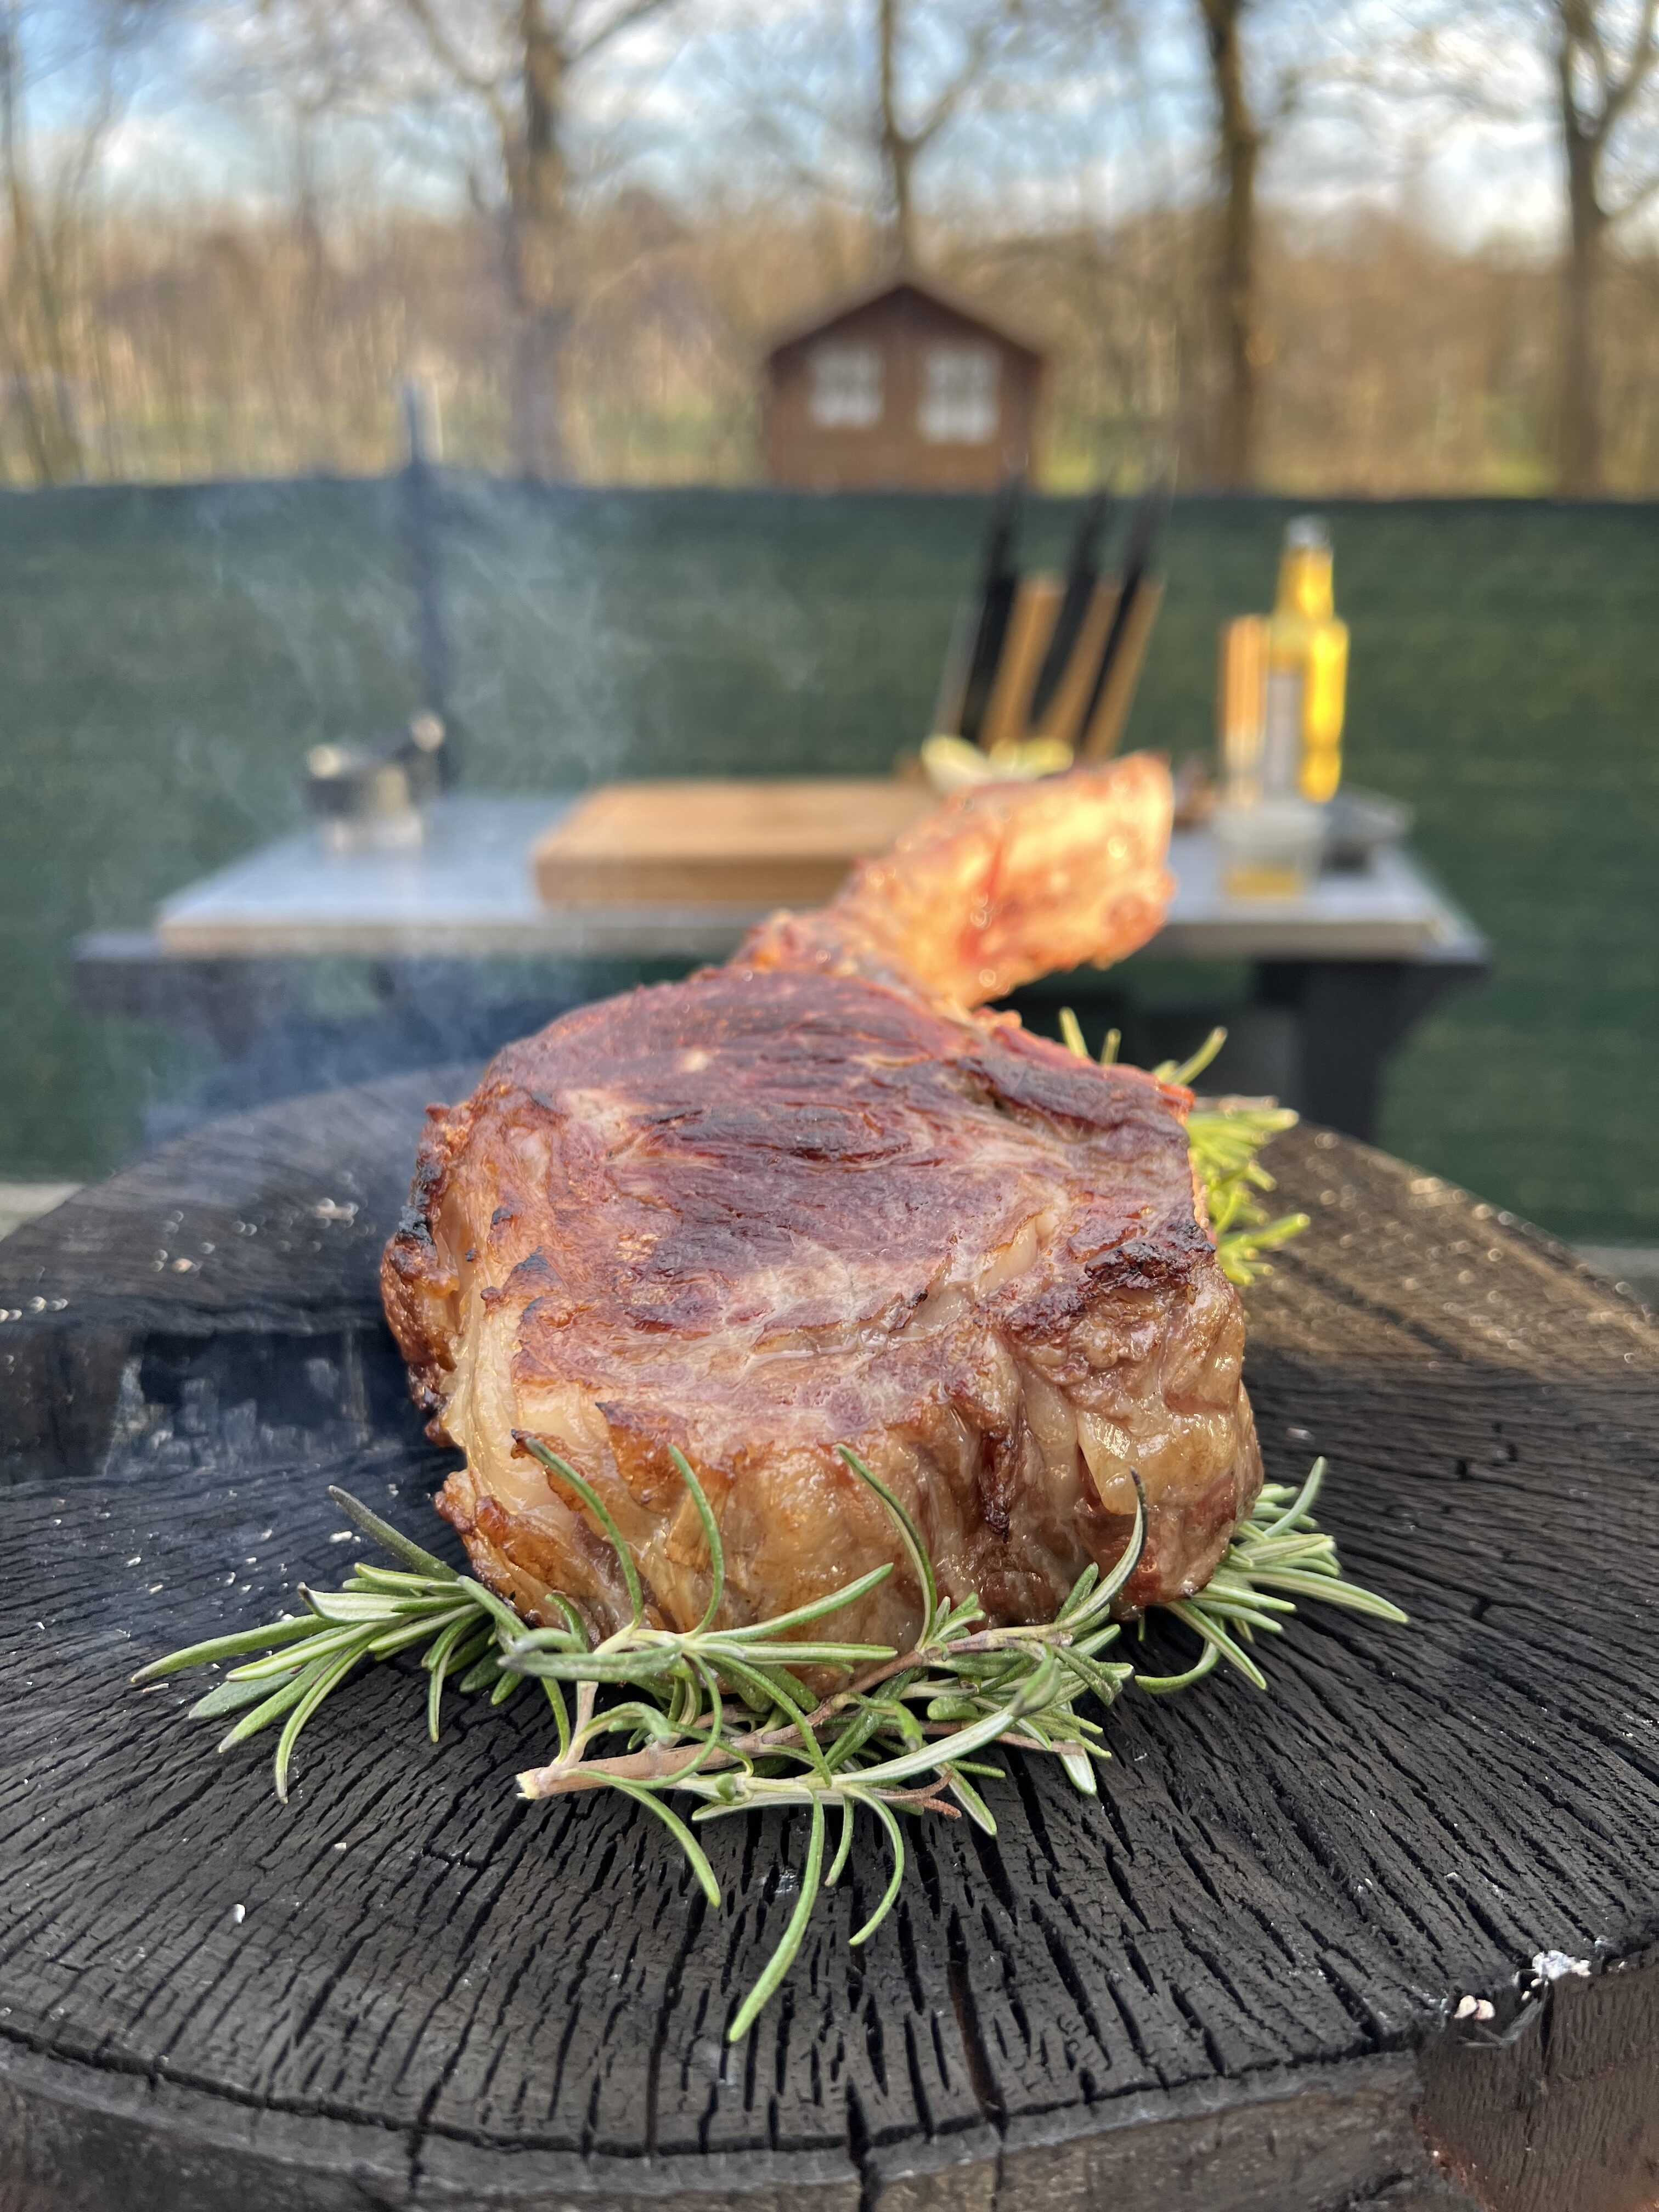 Tomahawk-Steak von der Feuerplatte mit Beilagen Rezept